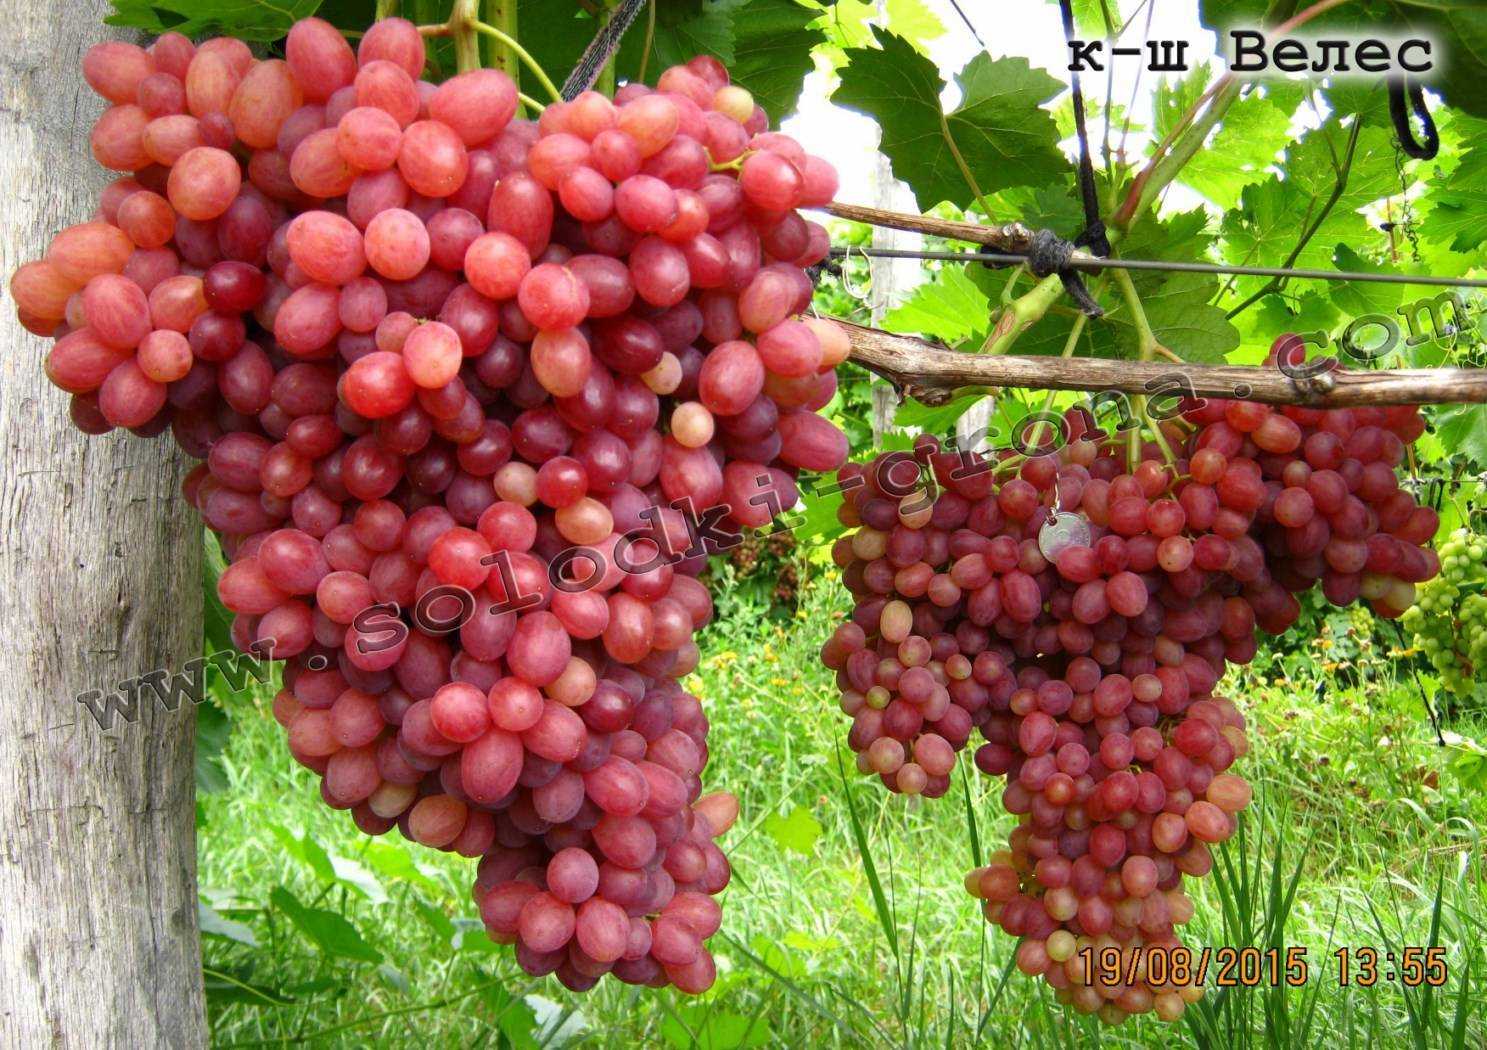 Сорт винограда кишмиш лучистый: описание, правила агротехники +видео